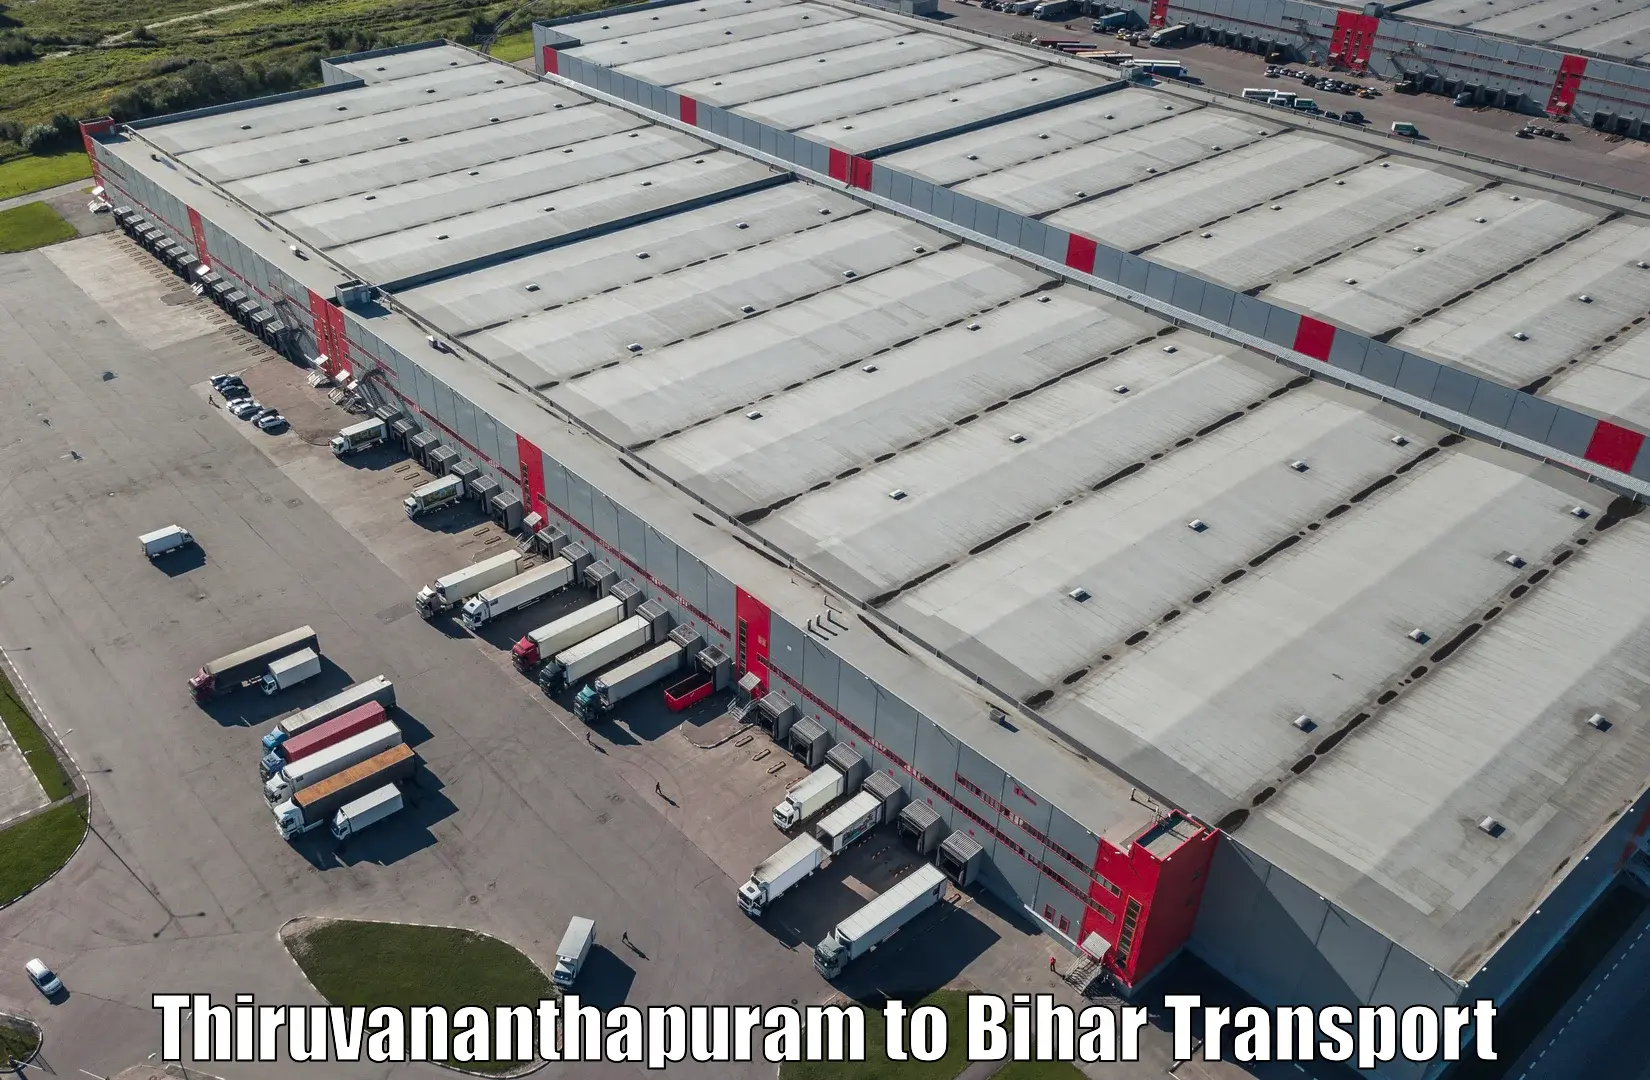 Daily transport service in Thiruvananthapuram to Dehri